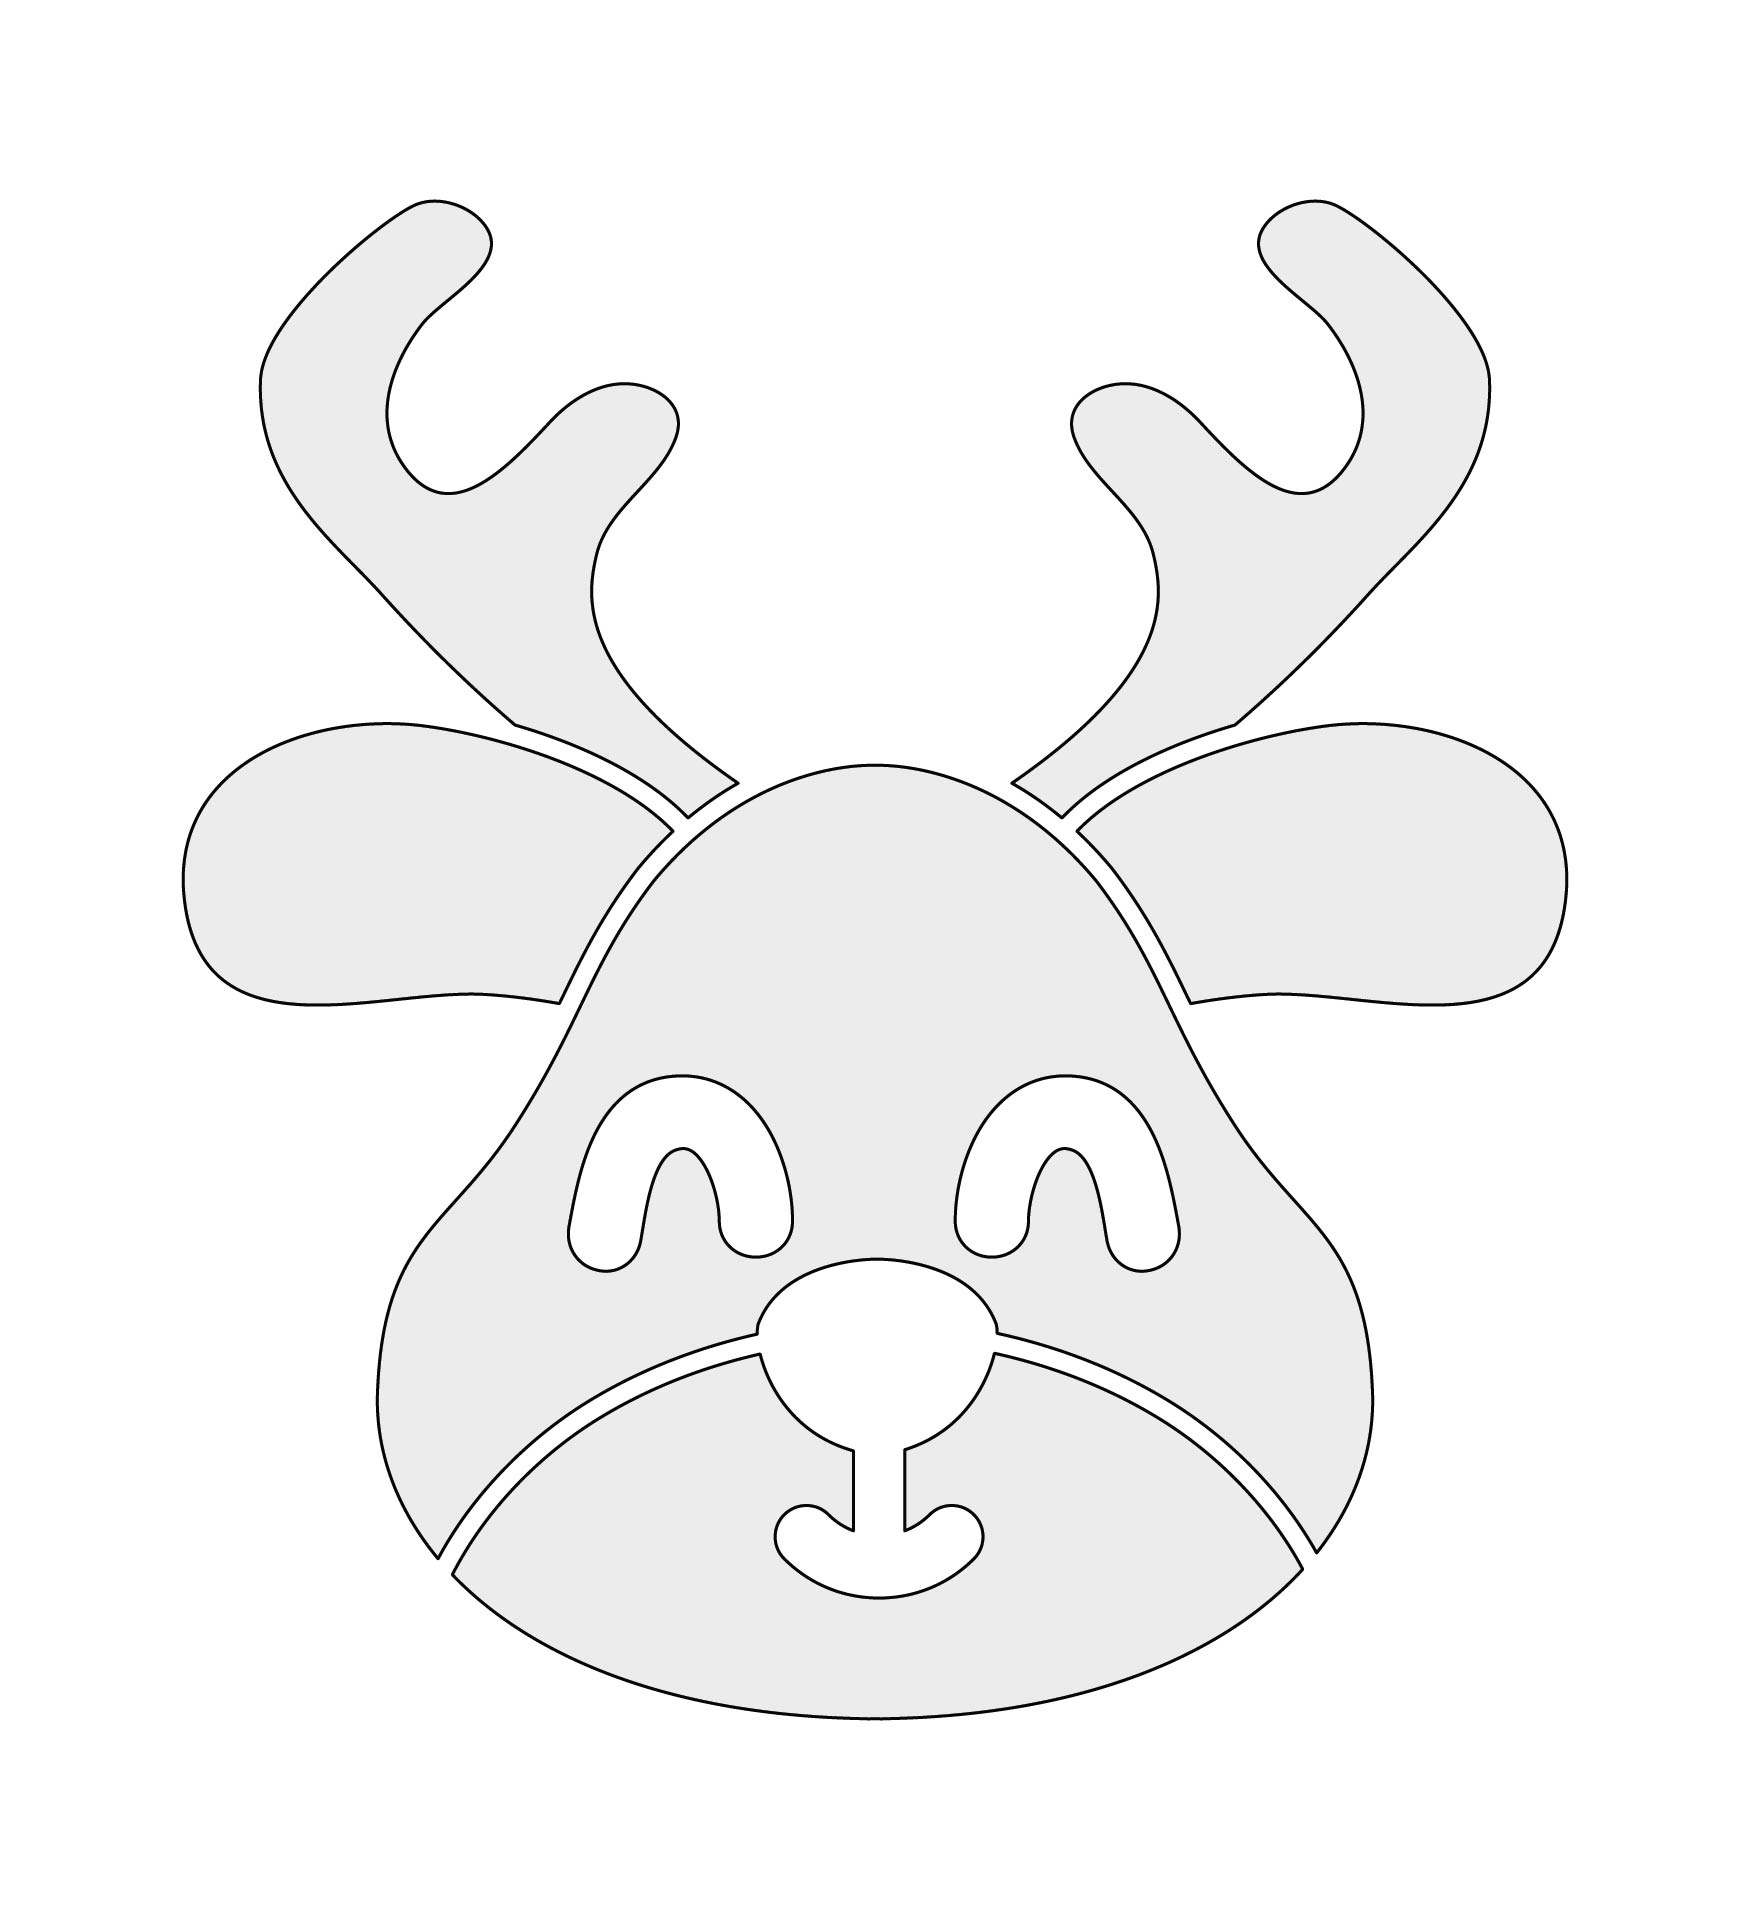 5-best-images-of-free-printable-reindeer-stencil-free-reindeer